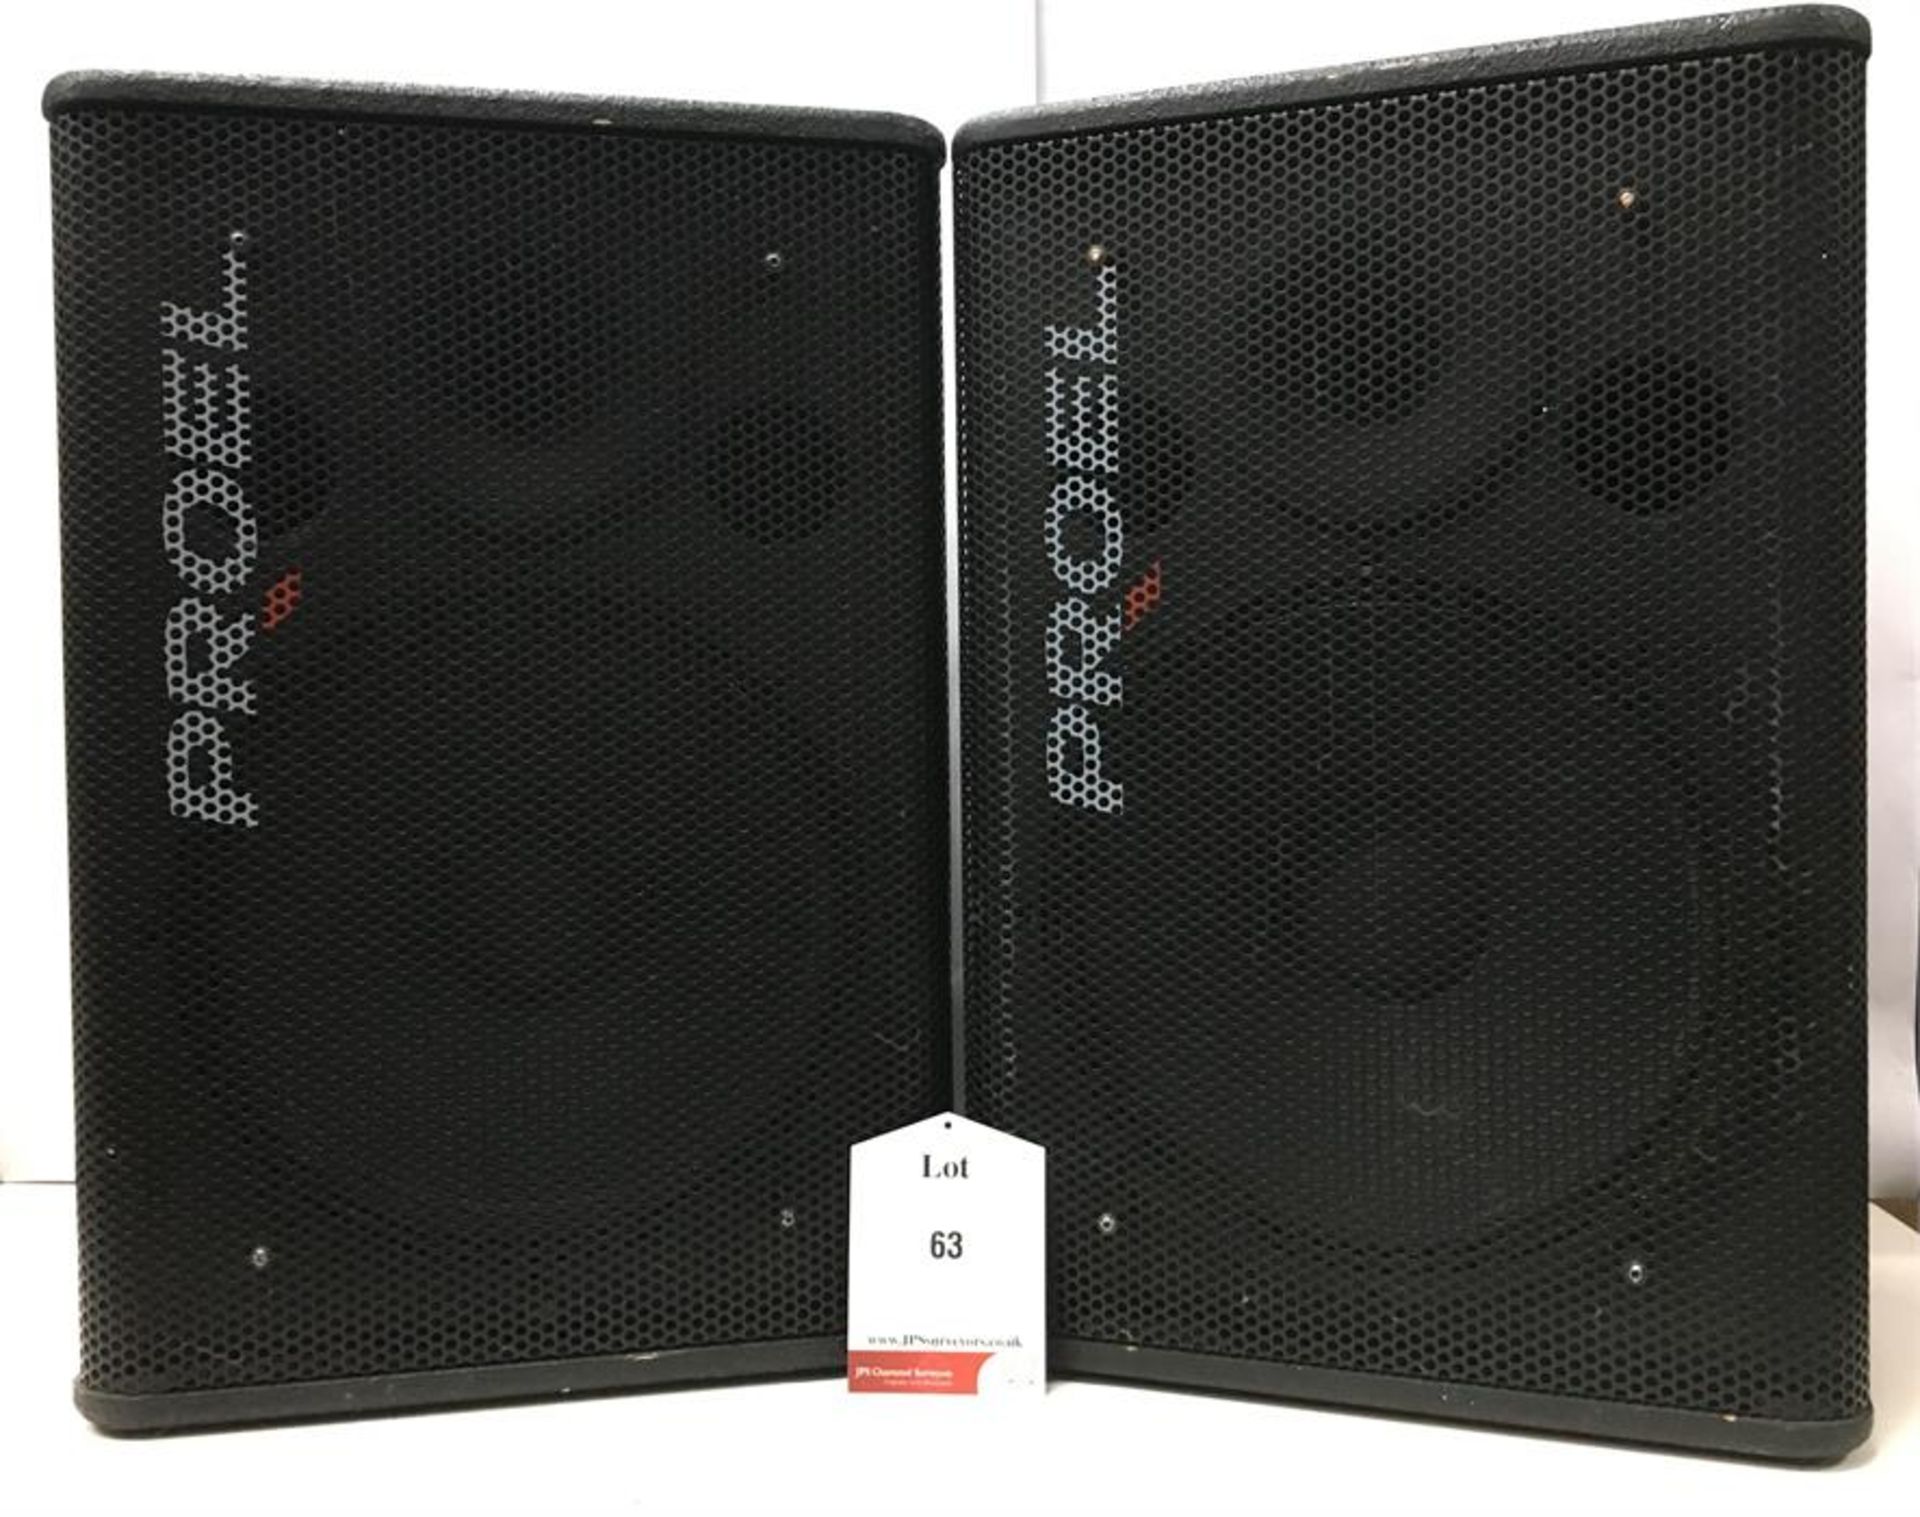 2 x Proel TFLV15P 2way Speakers